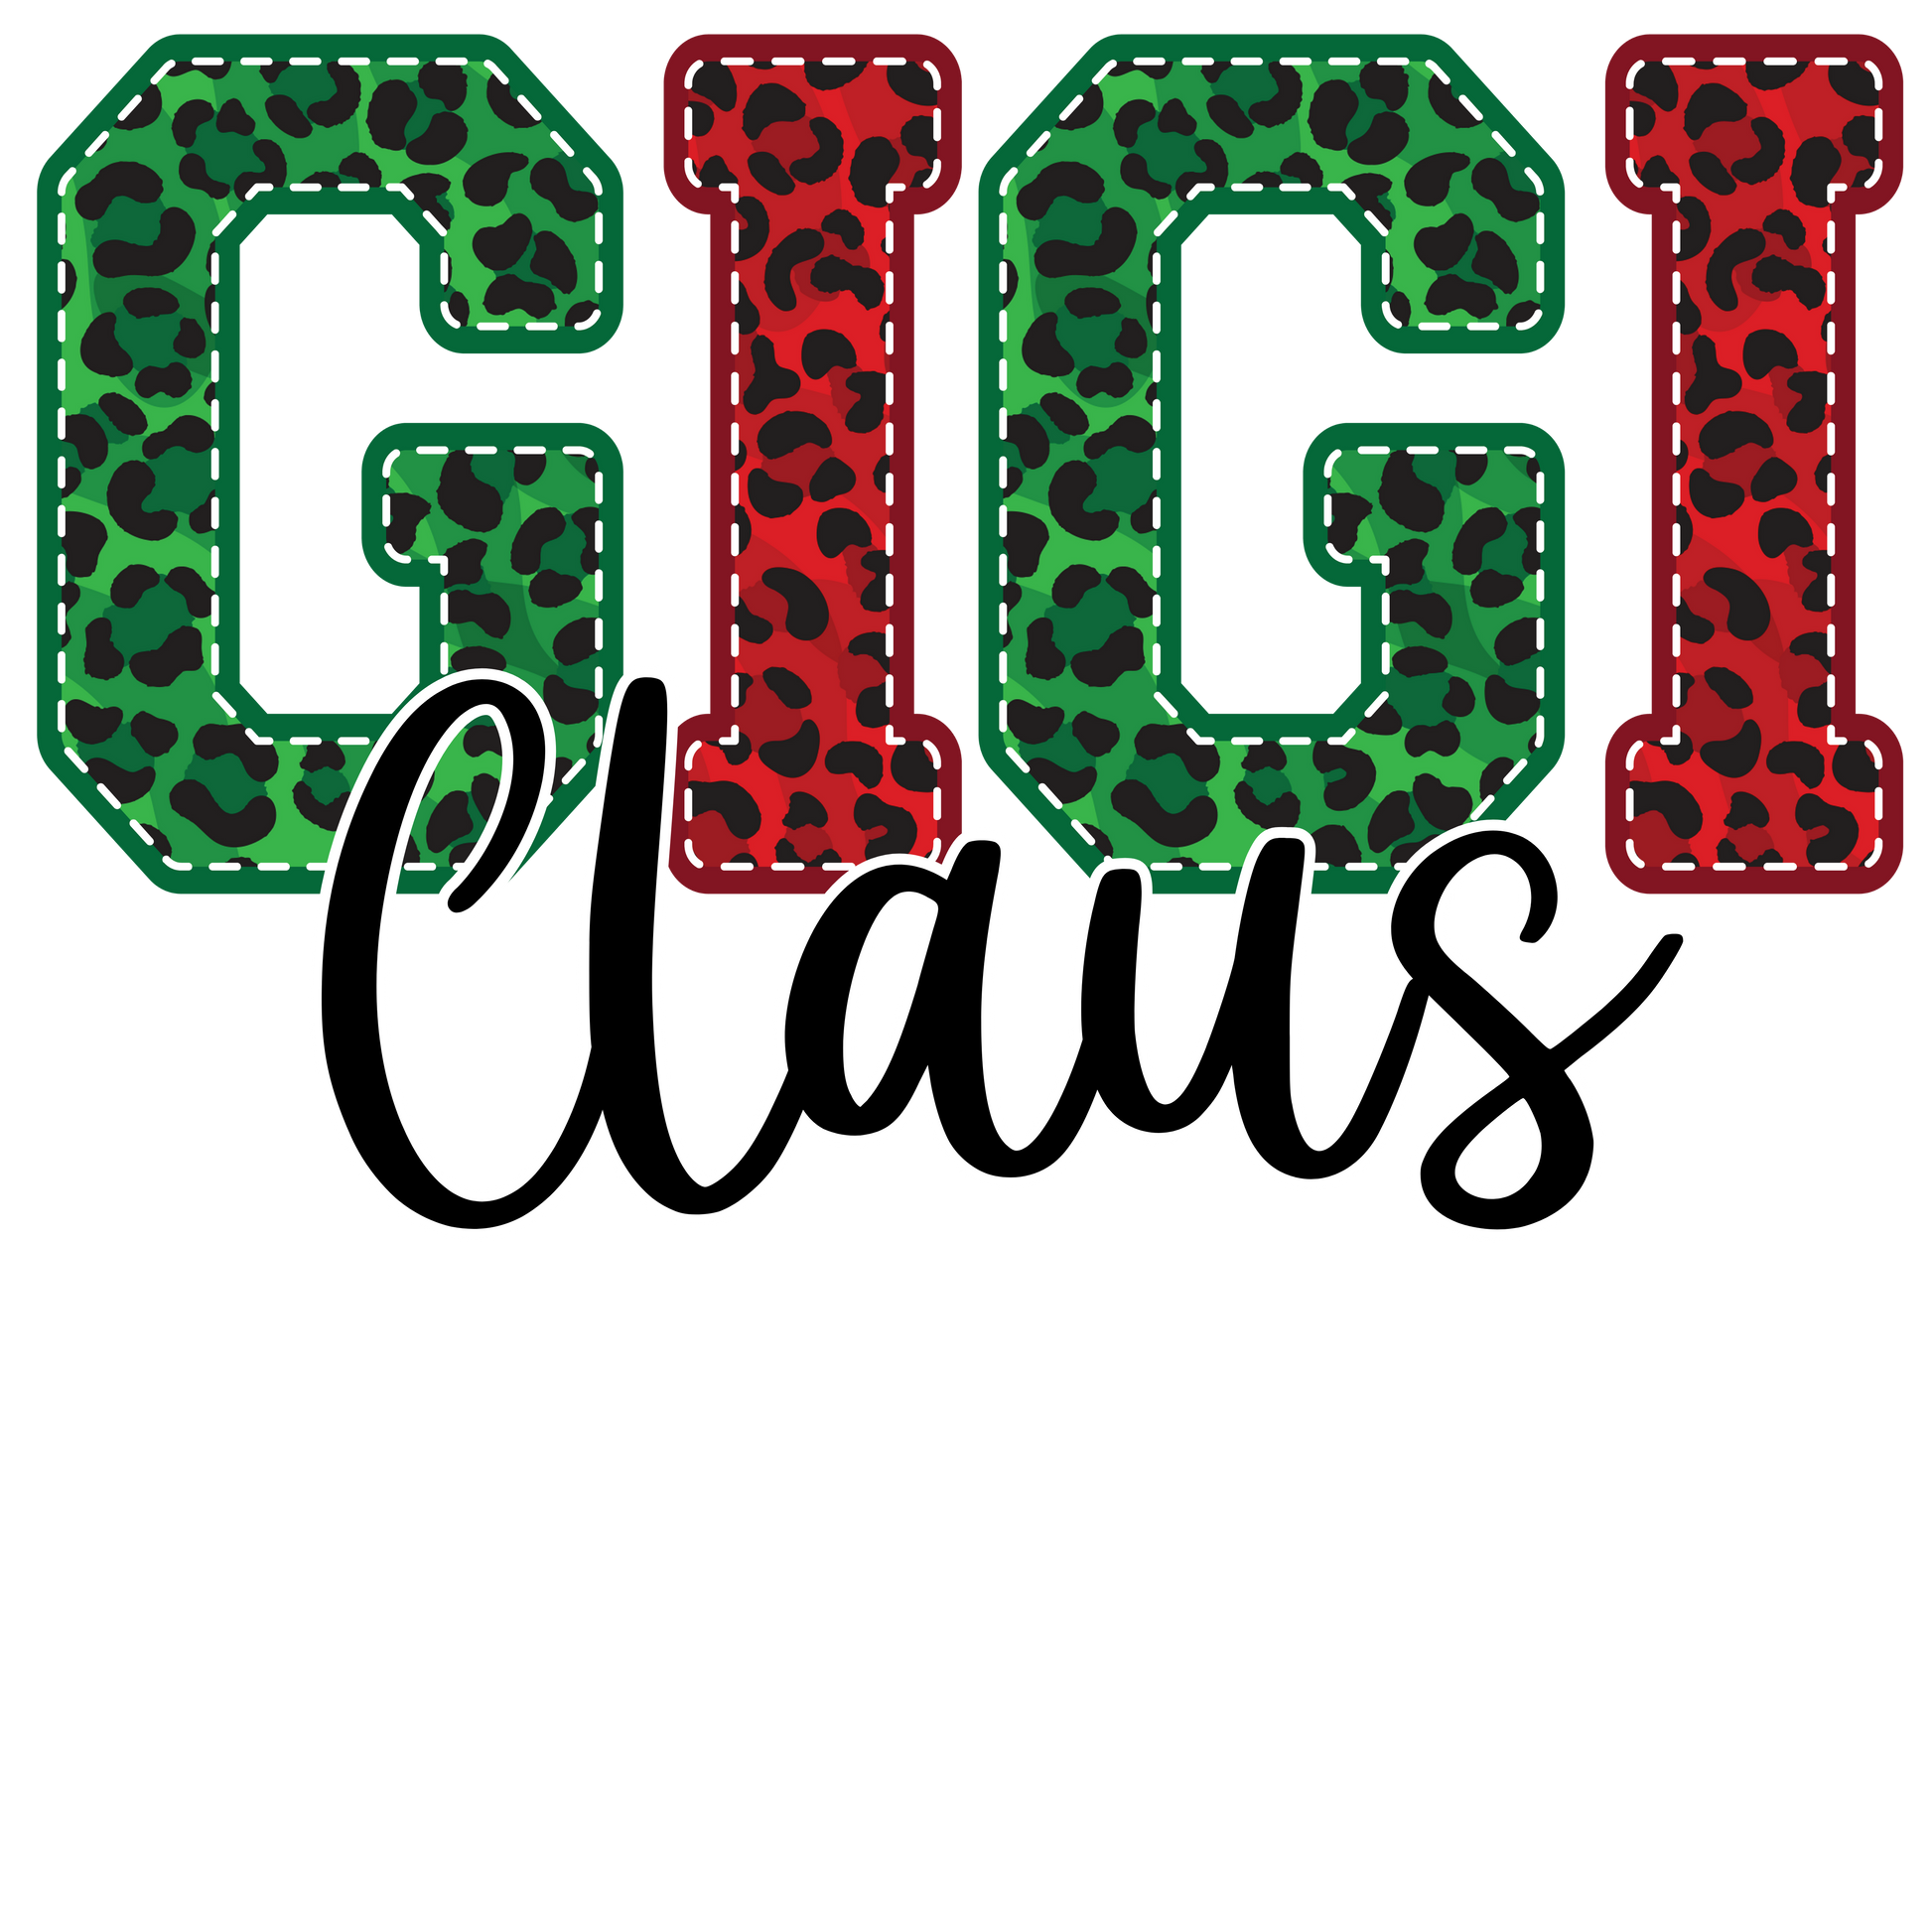 Gigi Claus